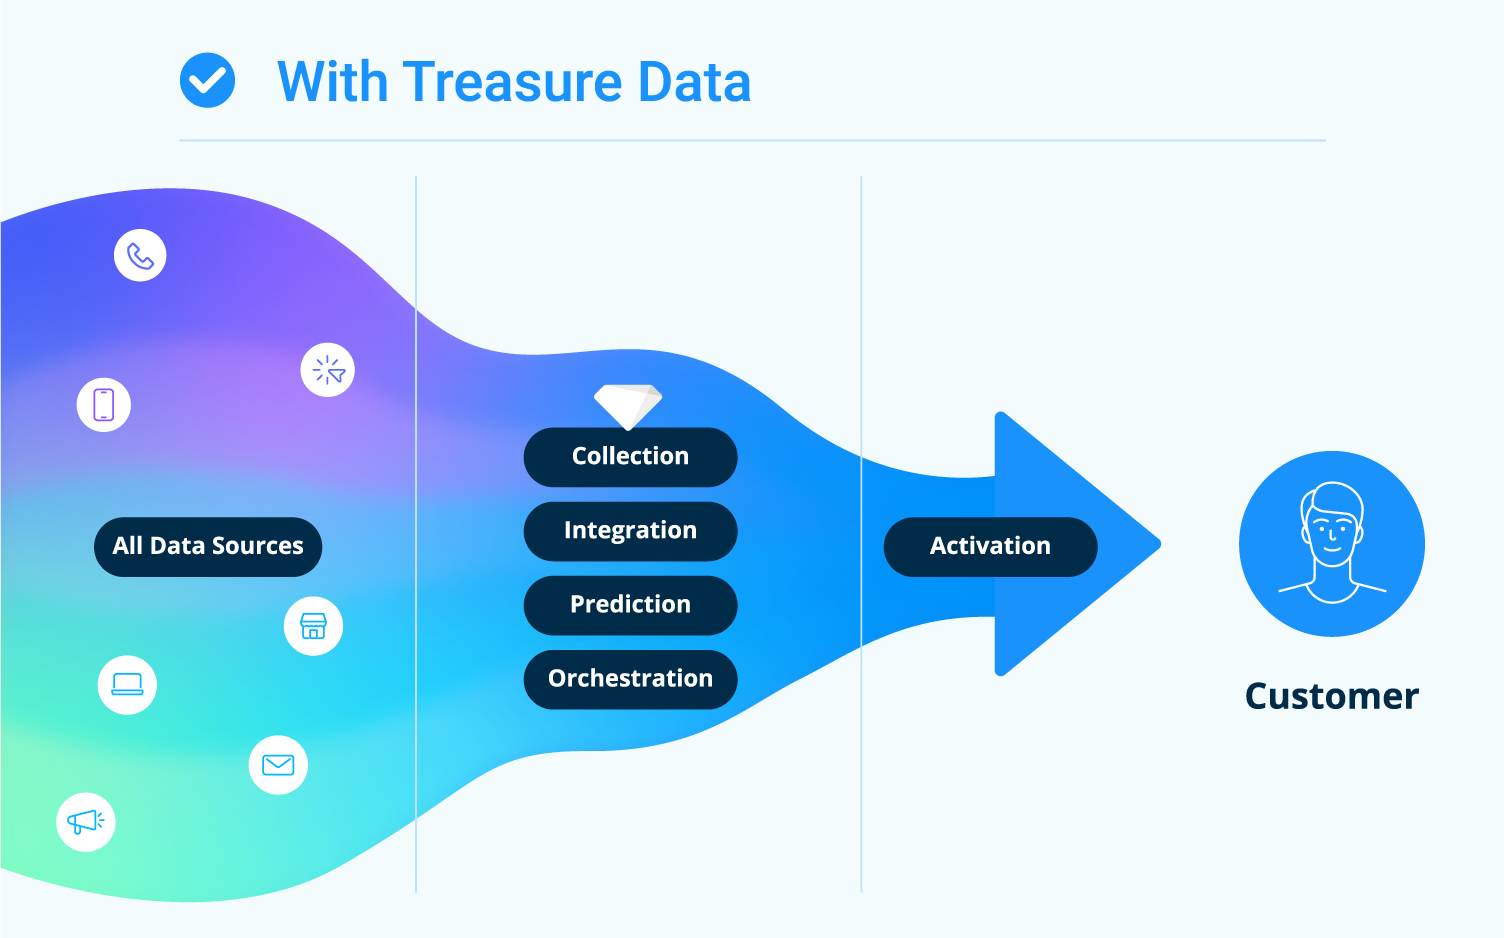 With Treasure Data